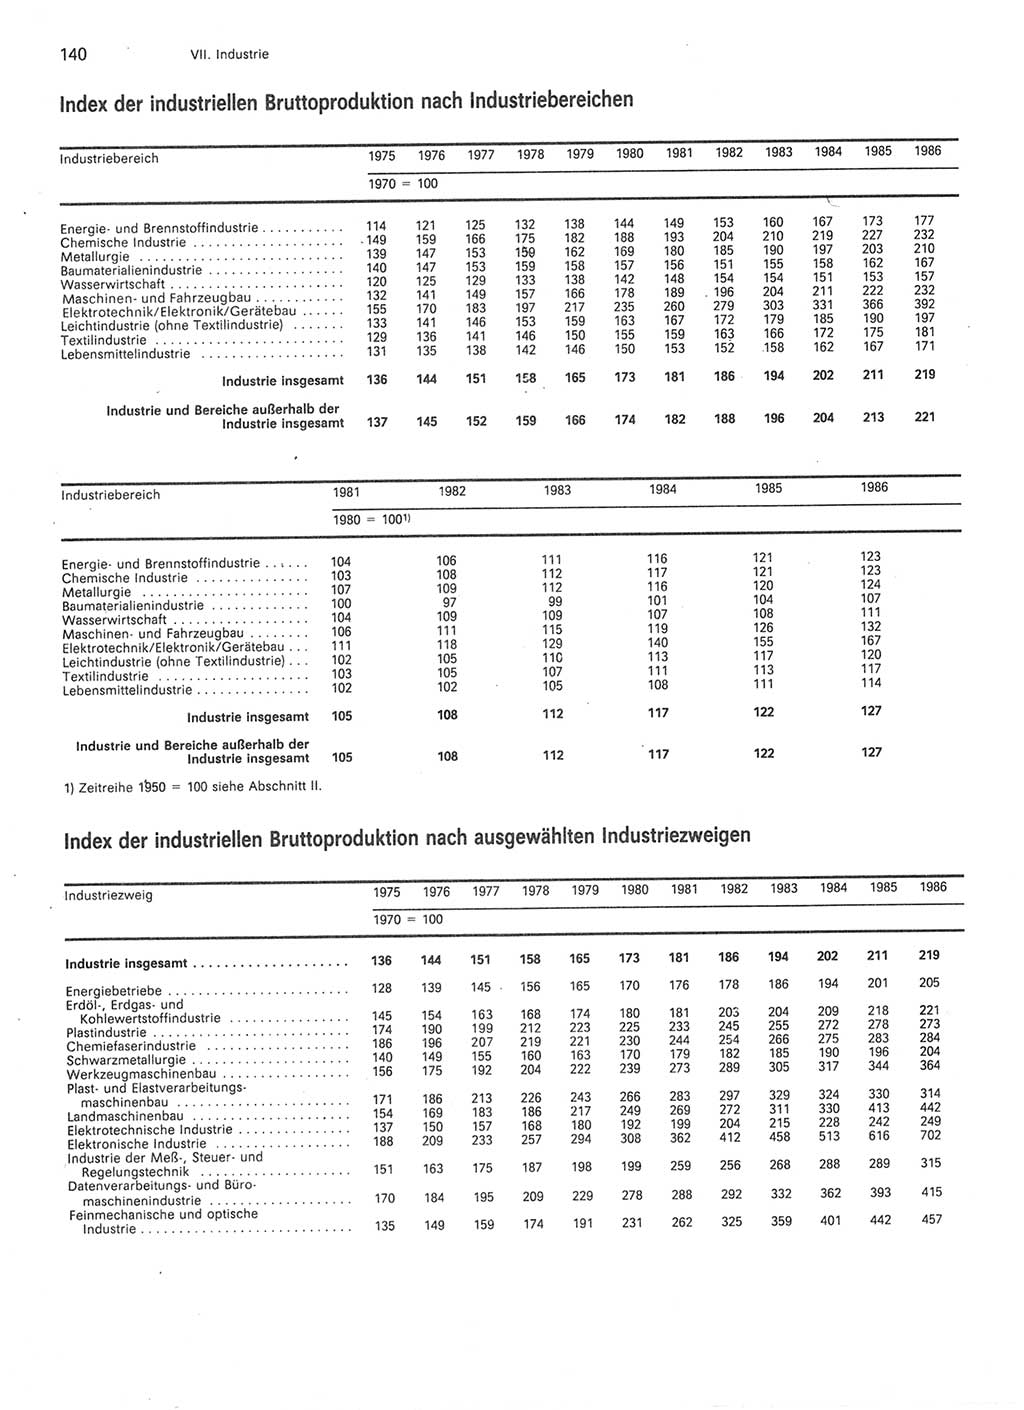 Statistisches Jahrbuch der Deutschen Demokratischen Republik (DDR) 1987, Seite 140 (Stat. Jb. DDR 1987, S. 140)